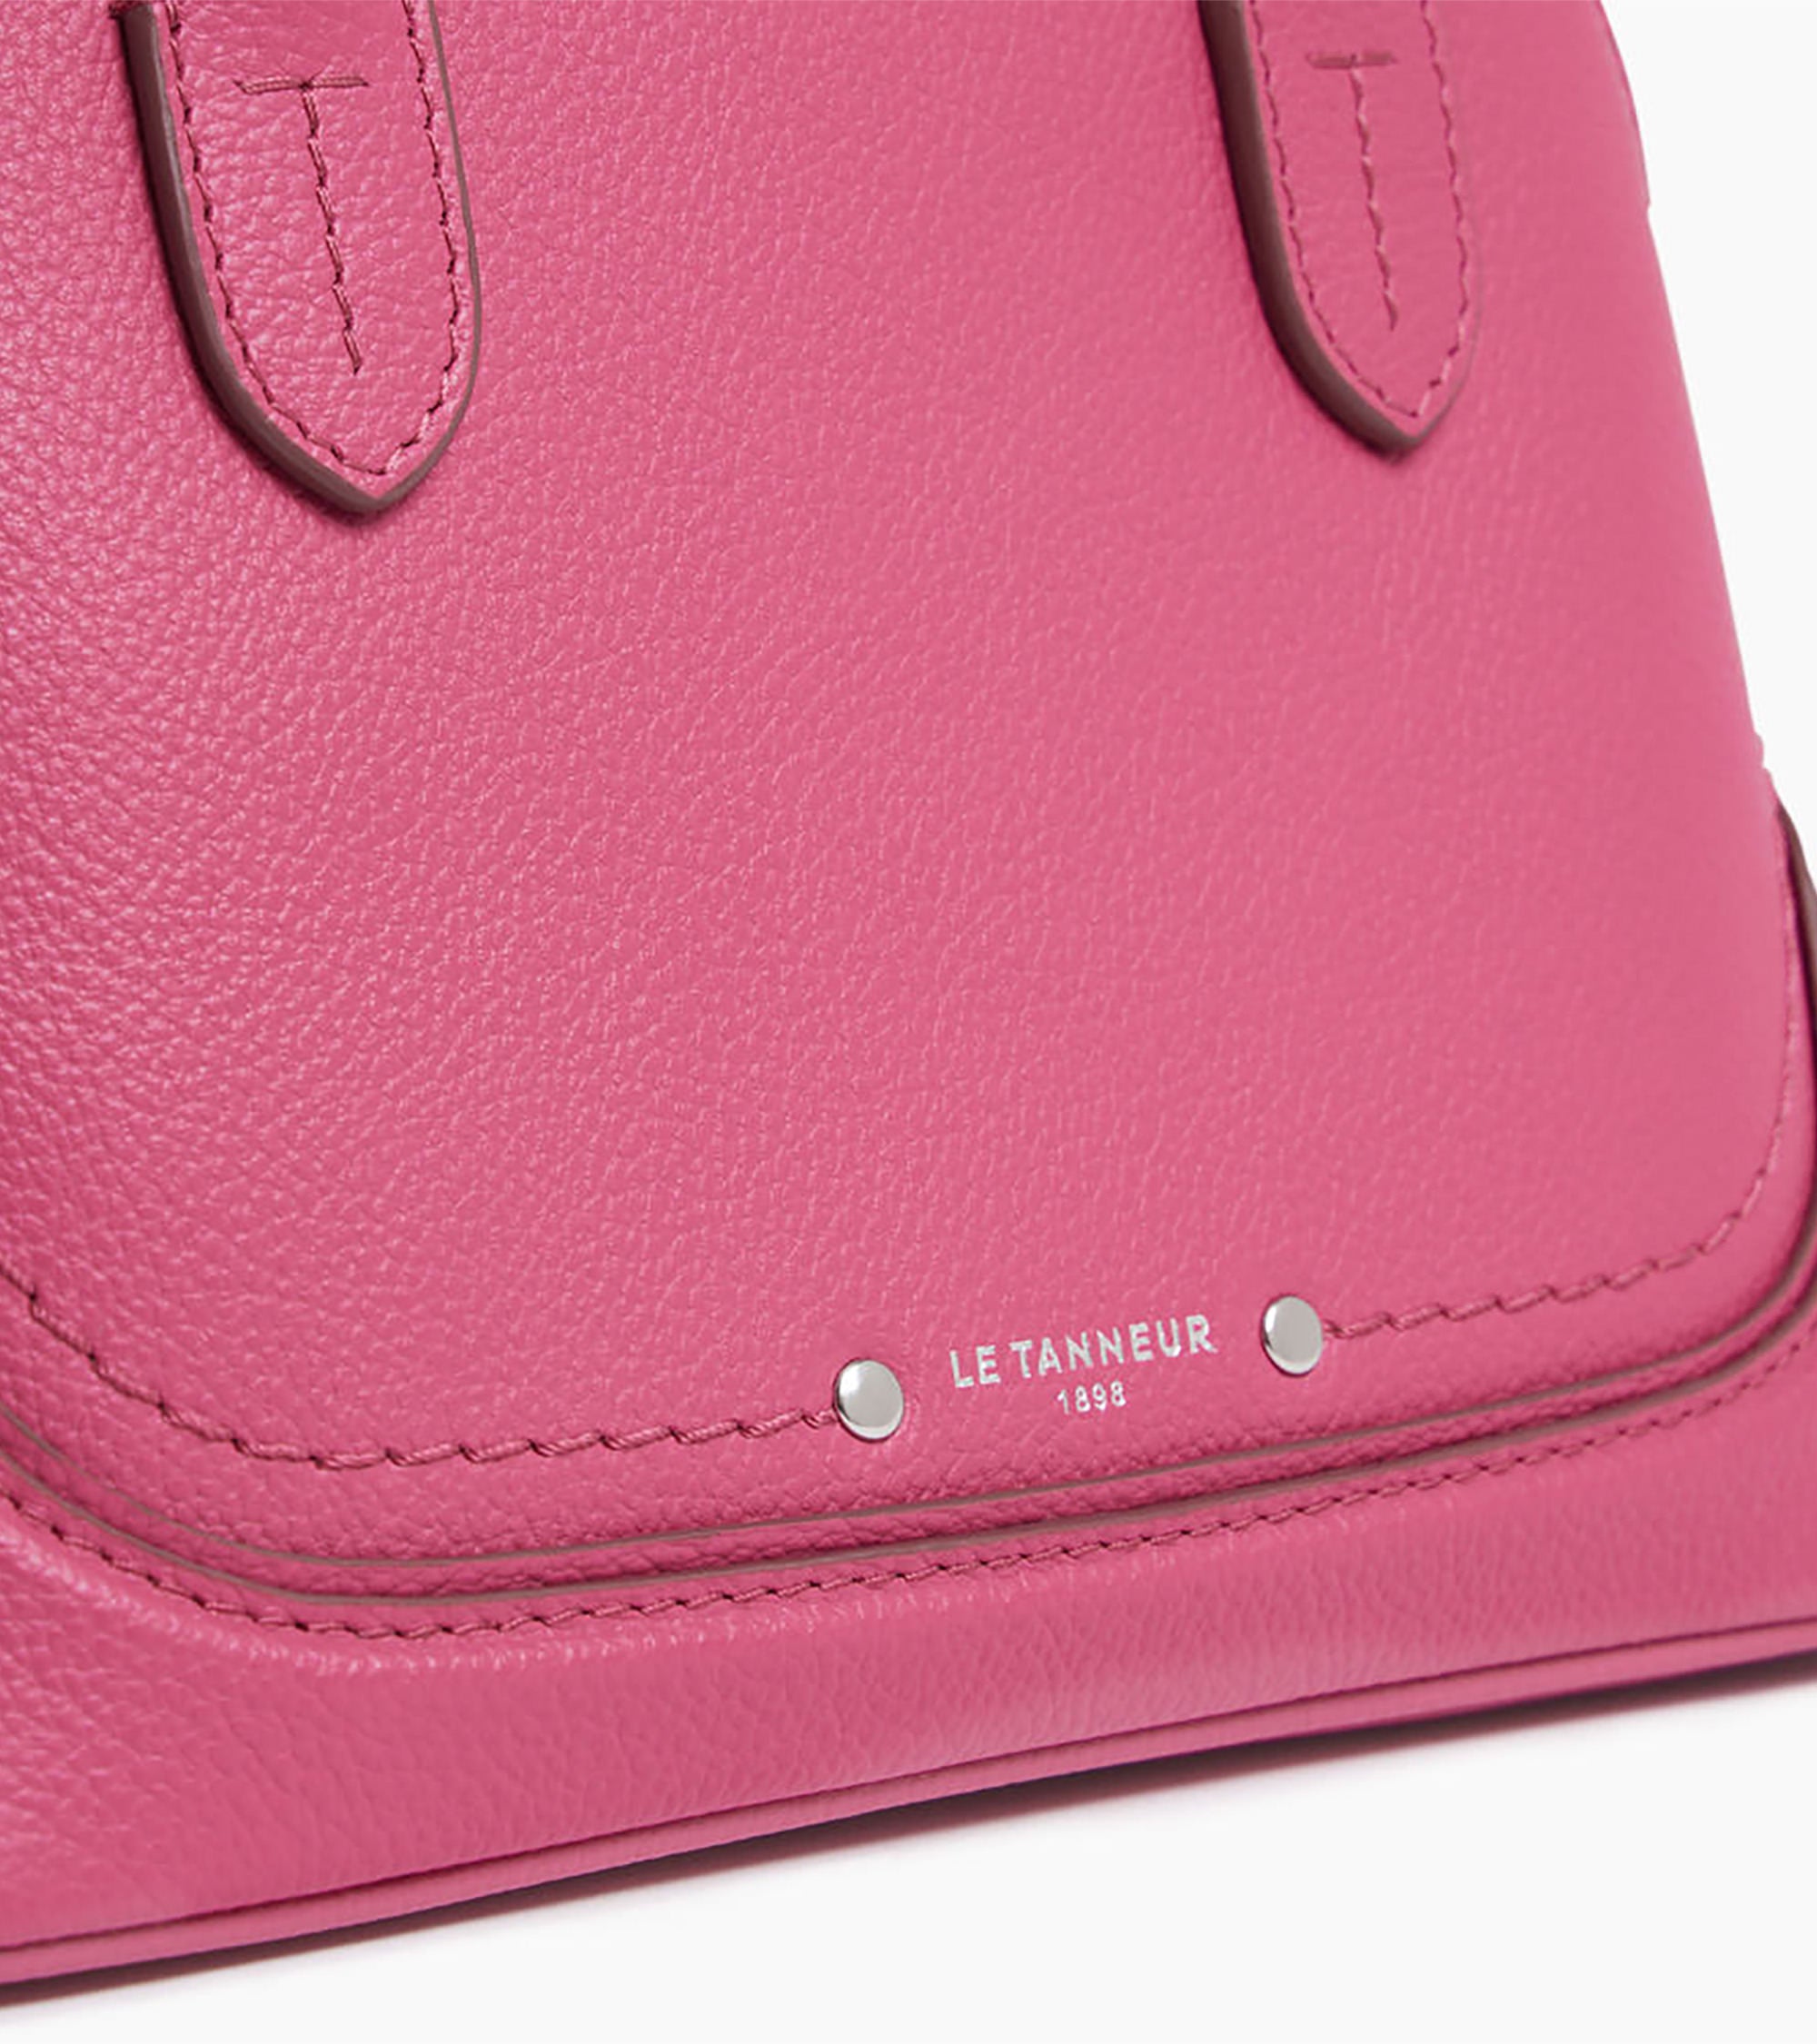 Ella small handbag in grained leather